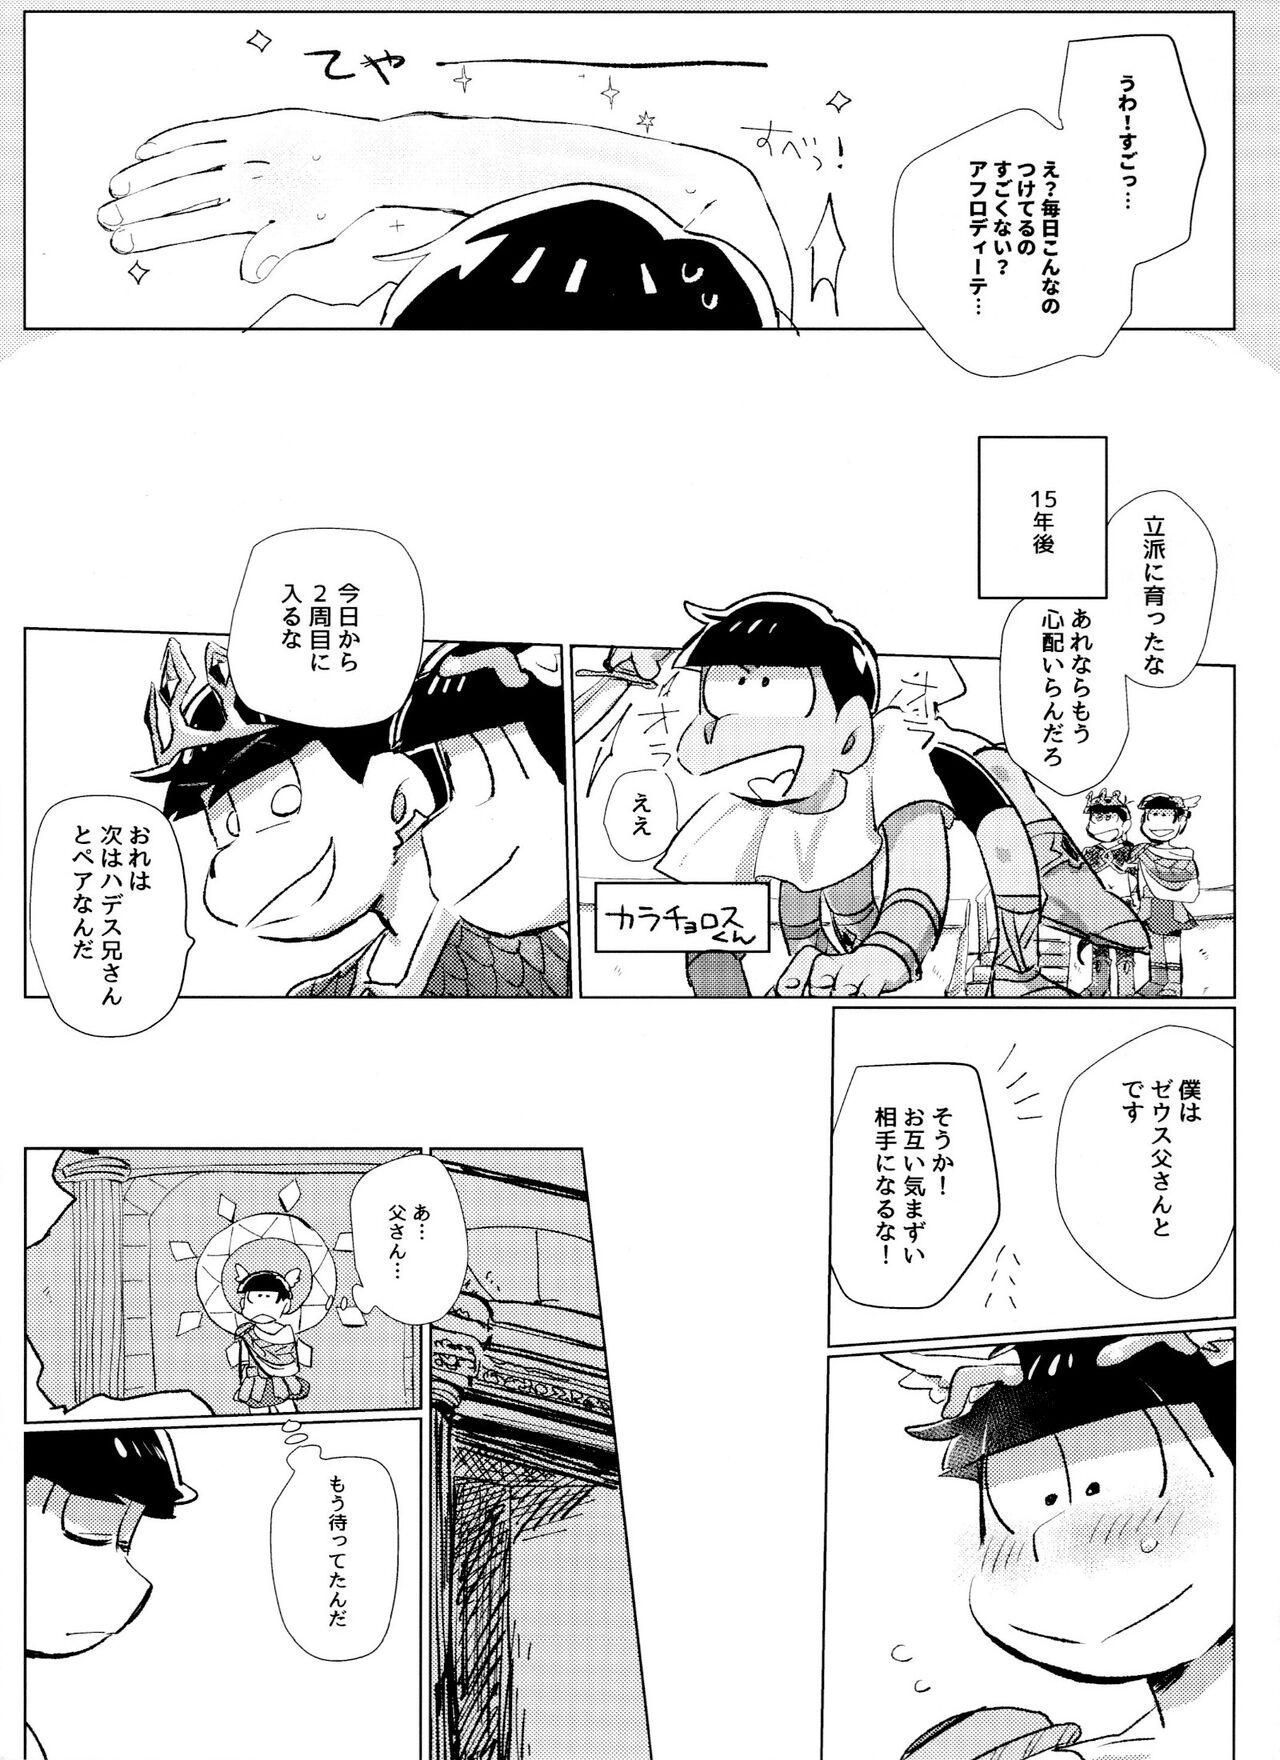 Foda [Handa gote sakka (handa)] Zeuapo-ko-tsukuri shinwa (Osomatsu-San) - Osomatsu-san Glory Hole - Page 10